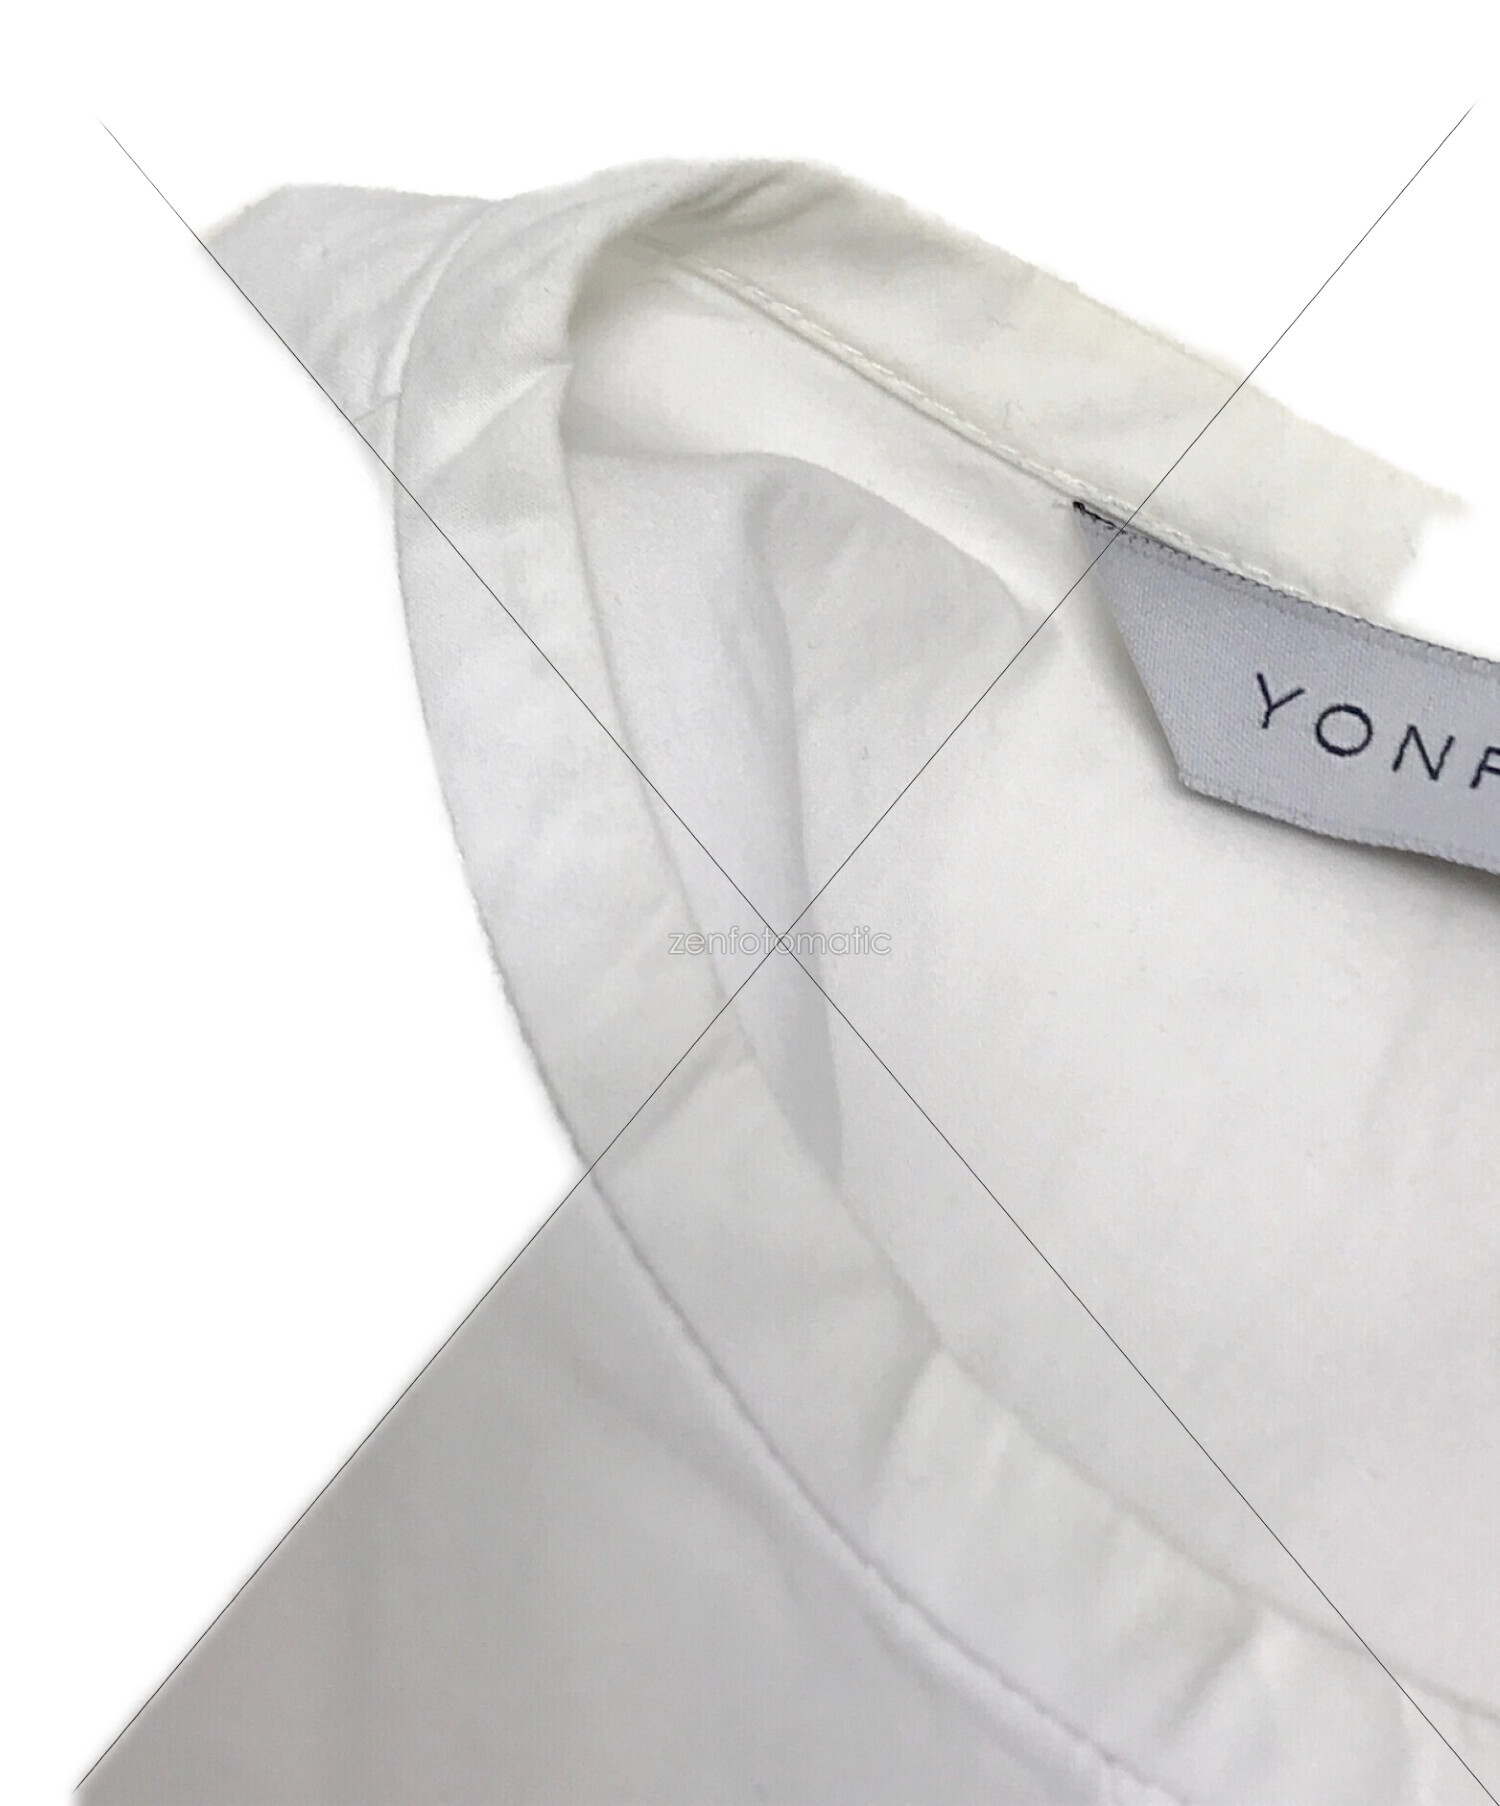 YONFA (ヨンファ) コクーンシャツワンピース ホワイト サイズ:S